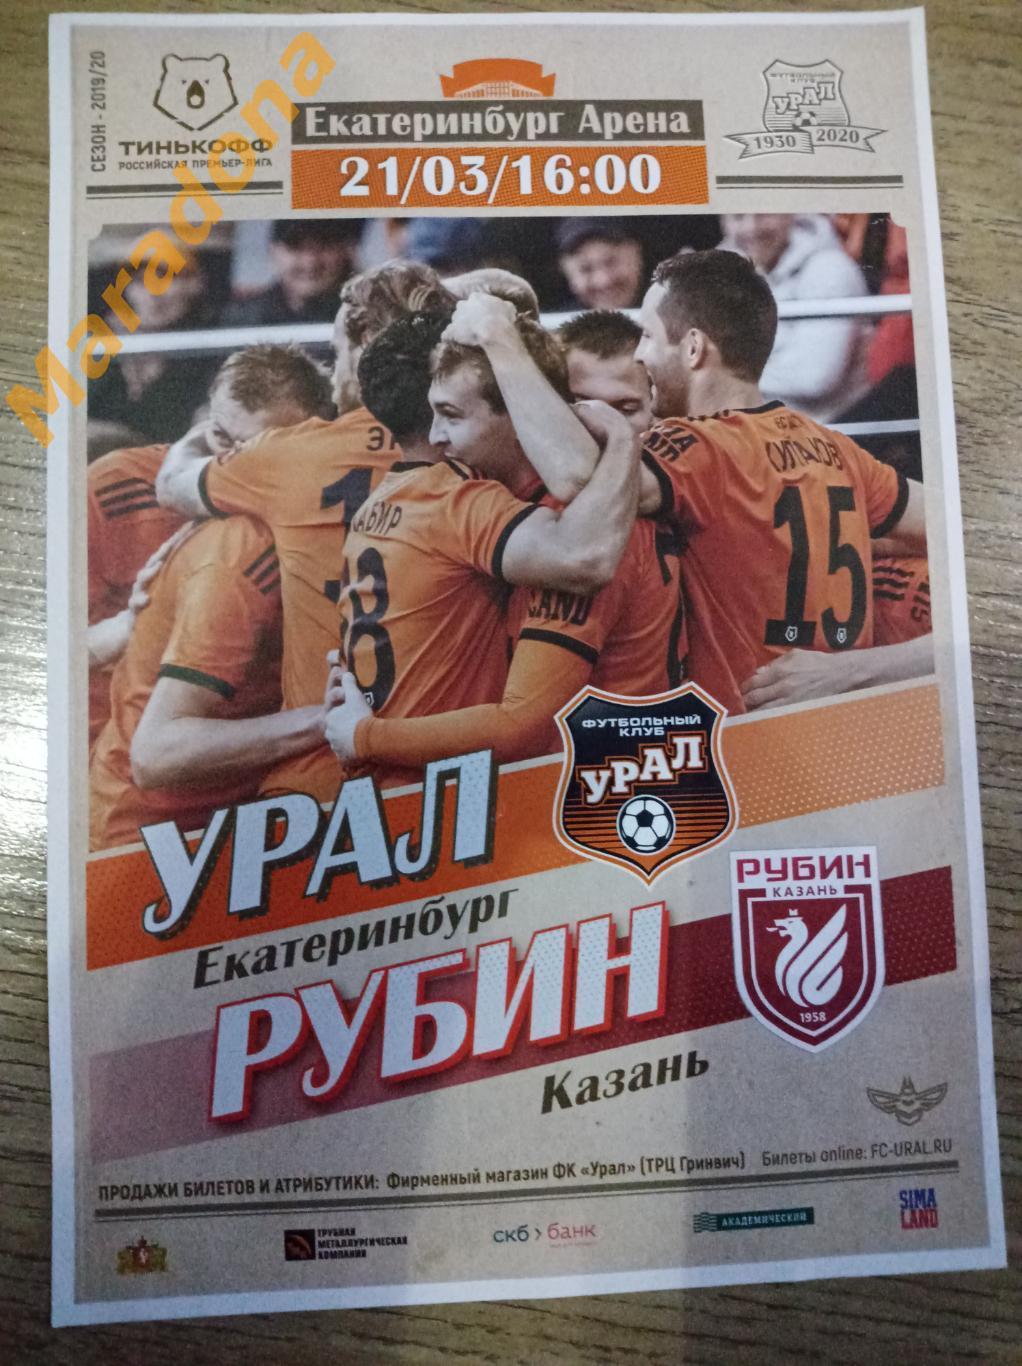 Урал Екатеринбург - Рубин Казань 2019/2020